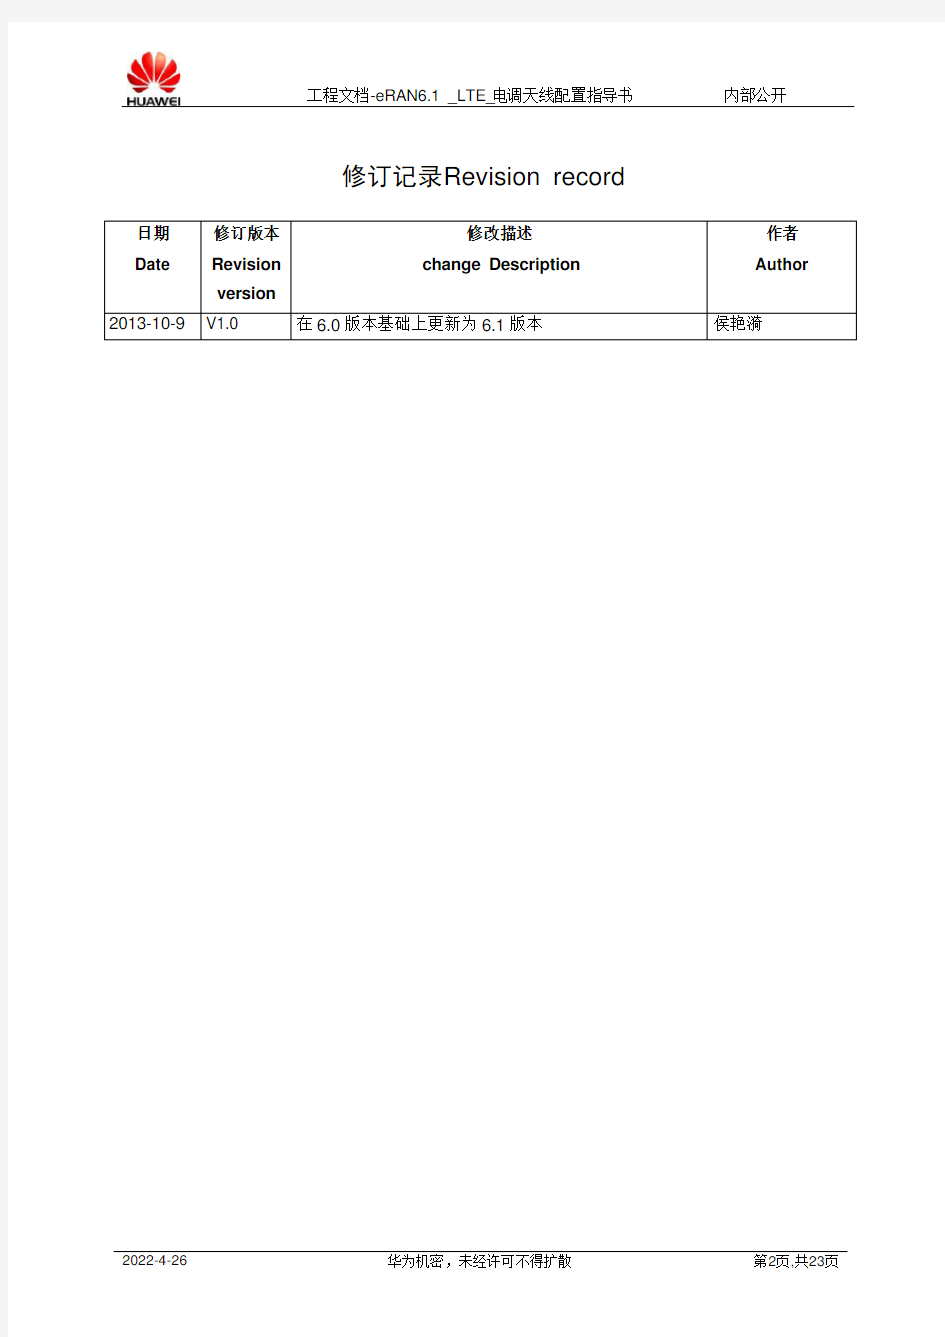 工程文档-eRAN6.1_LTE_电调天线配置指导书-V1.0-20131009